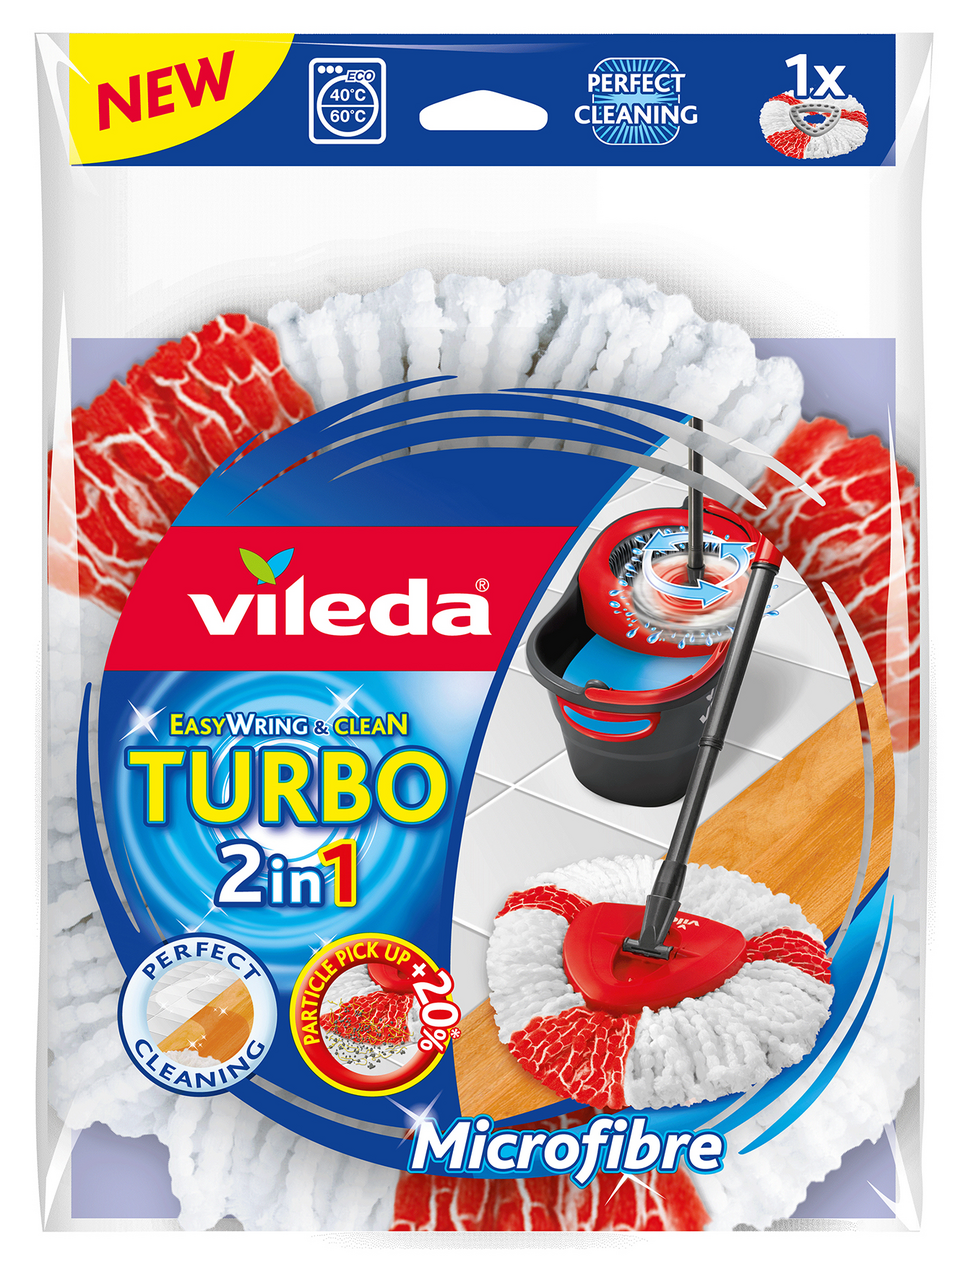 Vileda Turbo 2in1 Recambio de Microfibras y poliamida color rojo y blanco